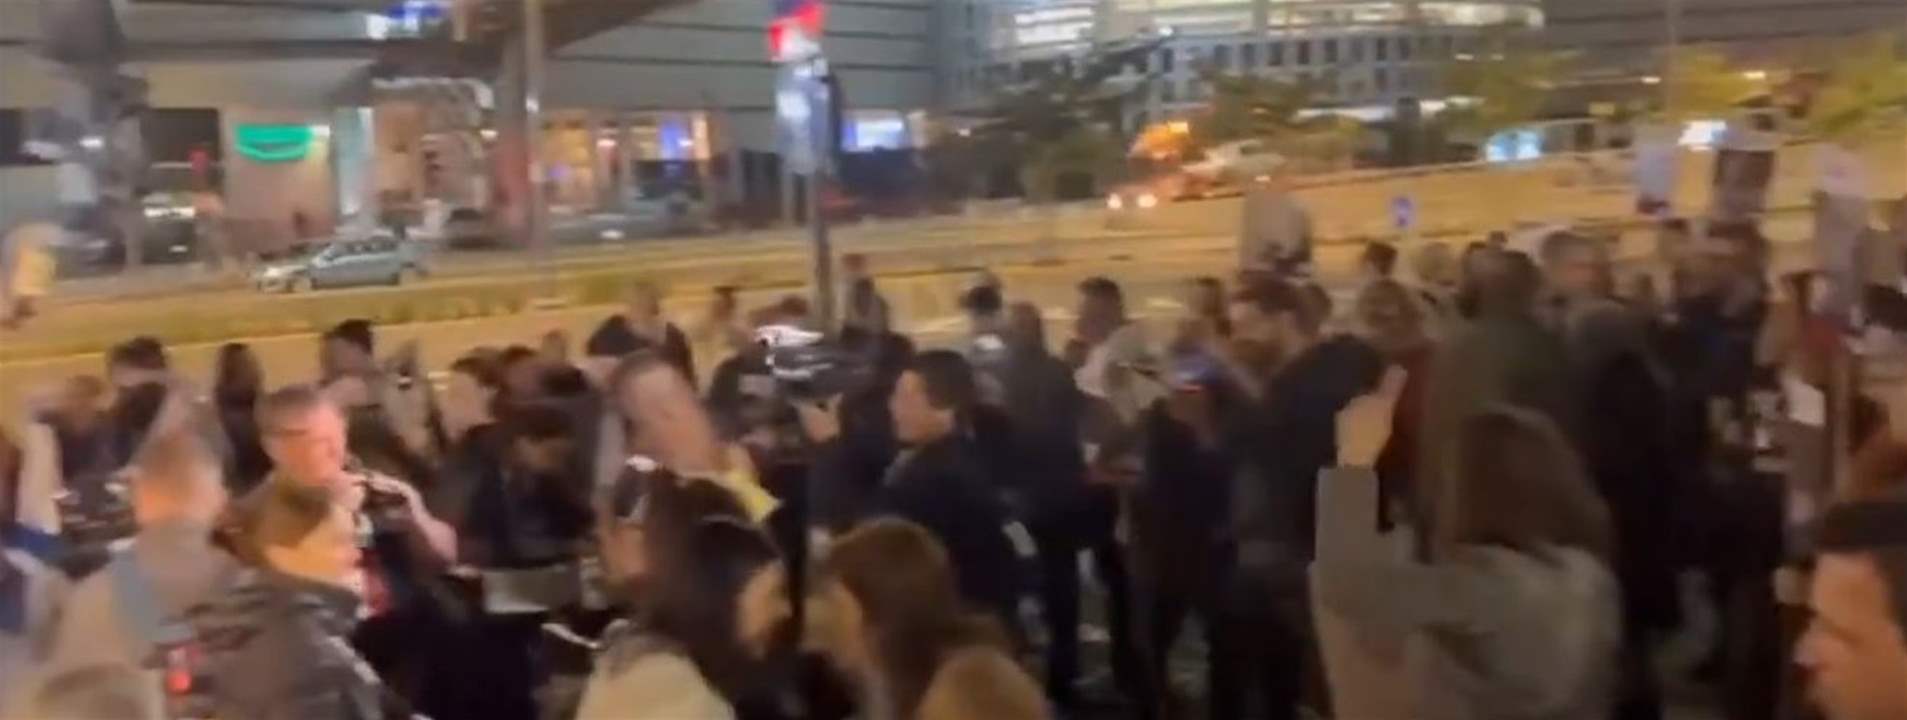 بالفيديو - أهالي الأســ ــرى الإسرائيليين يتظاهرون قبالة وزارة الحــر  ب في تل أبيب  